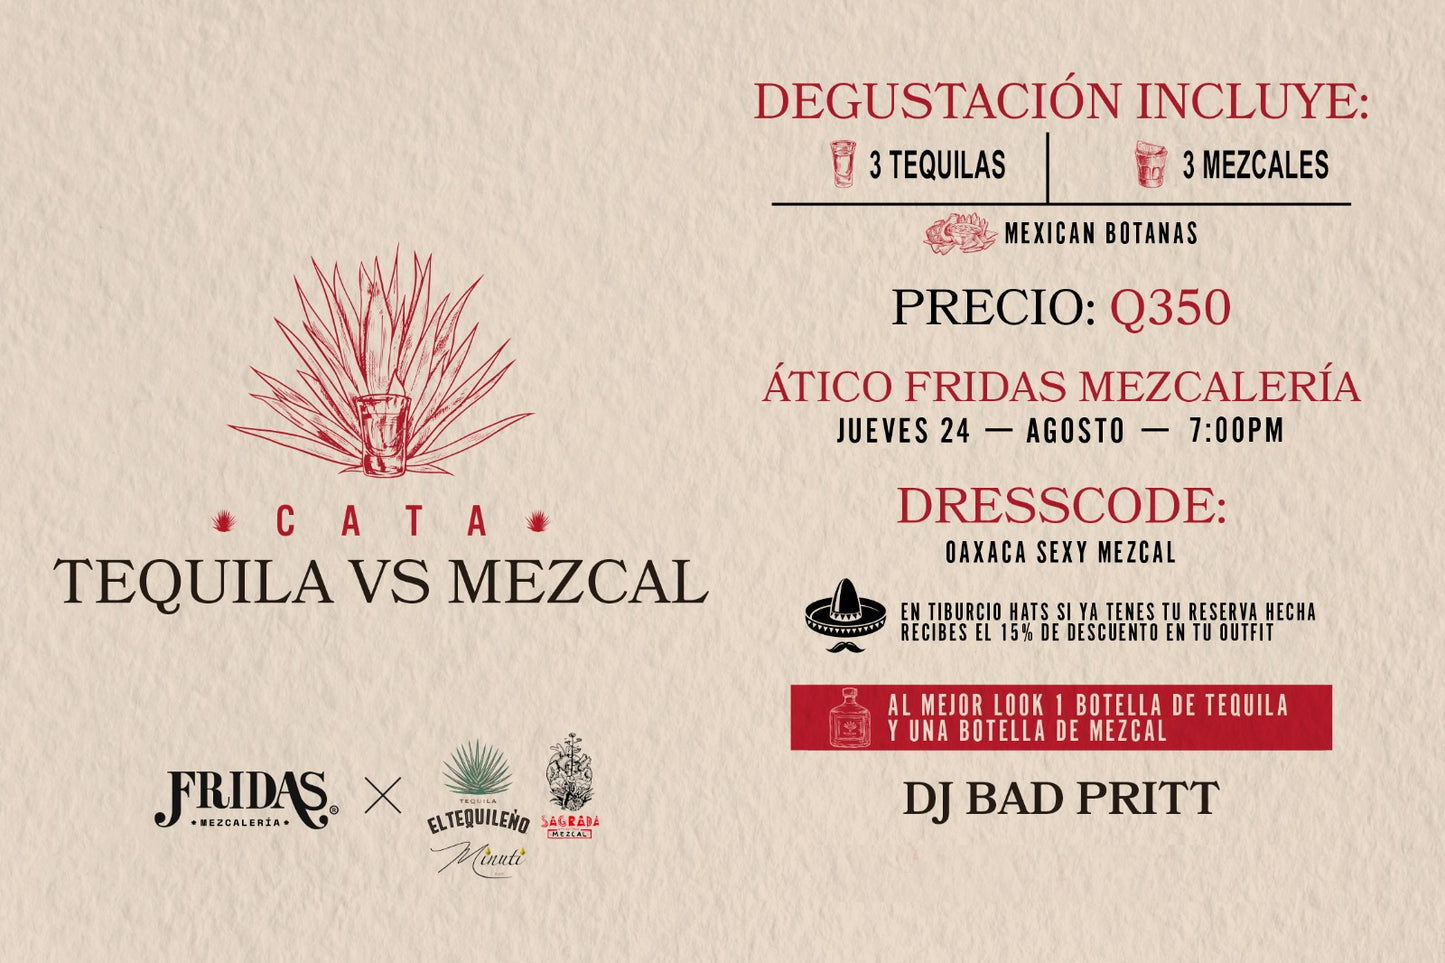 Cata Tequila vs Mezcal